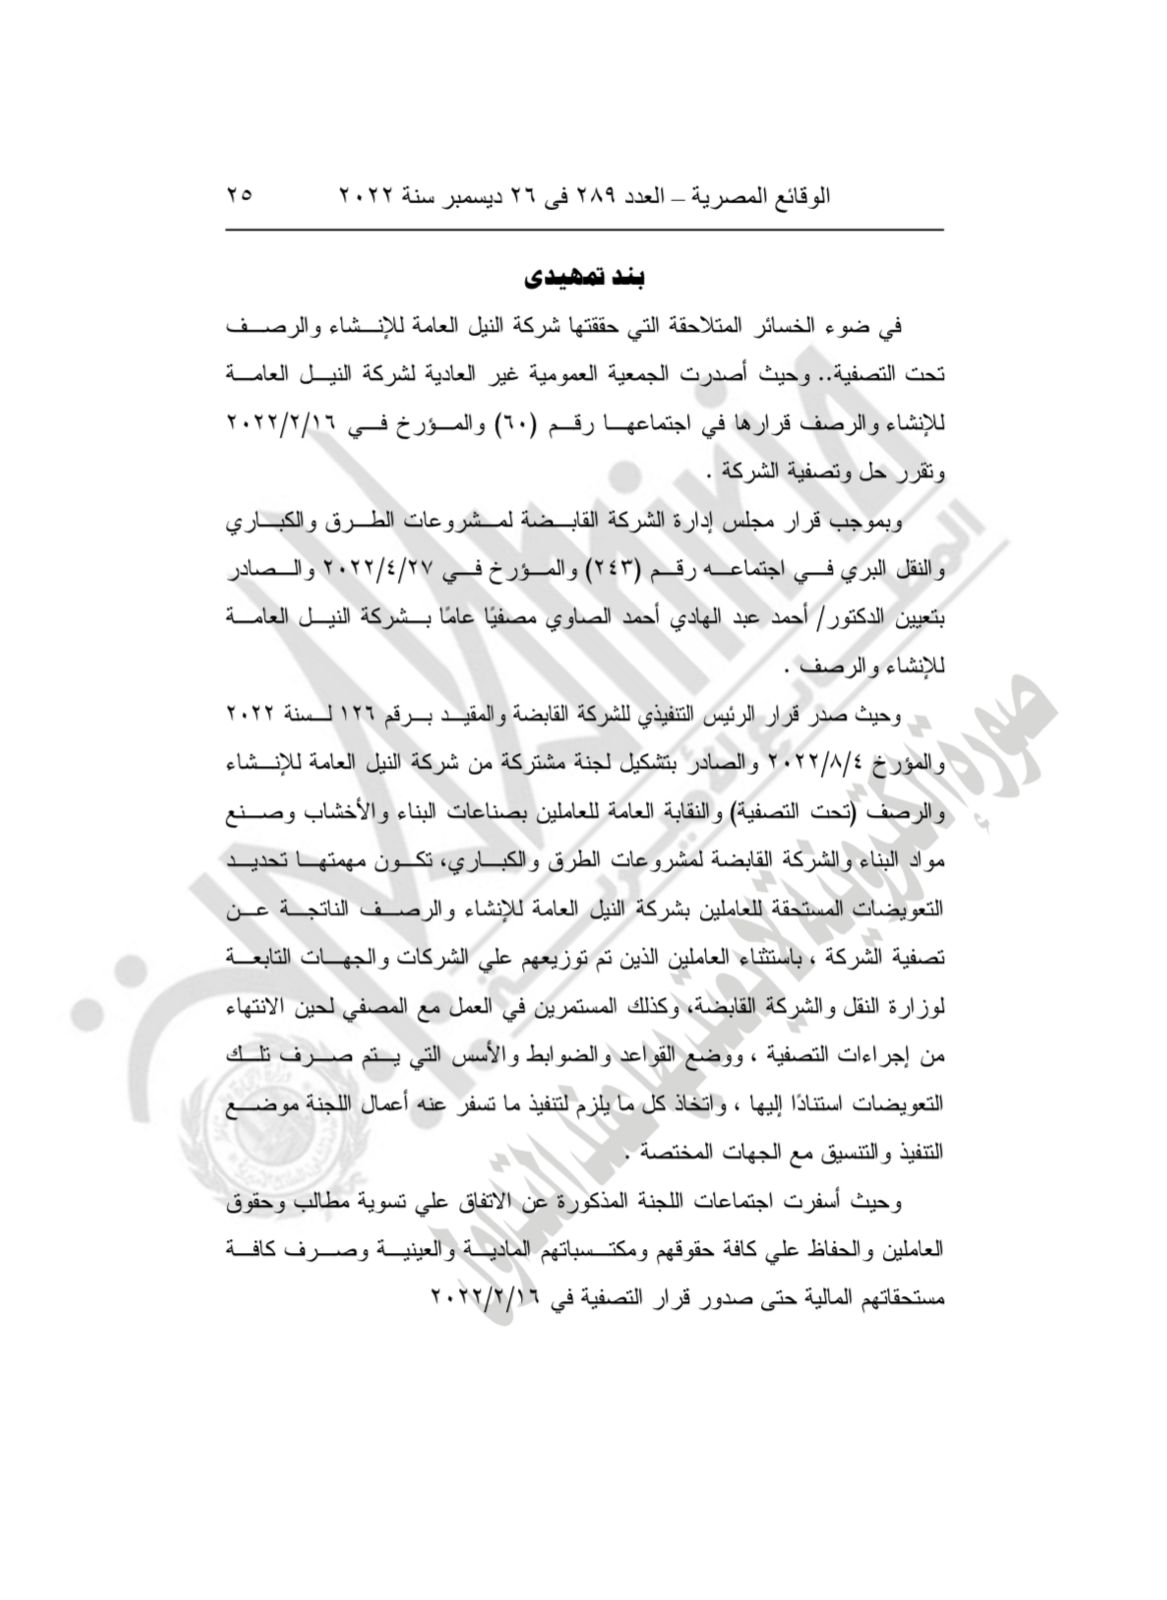 نص اتفاقية عمل لصرف مستحقات عمال النيل للإنشاء والرصف 2